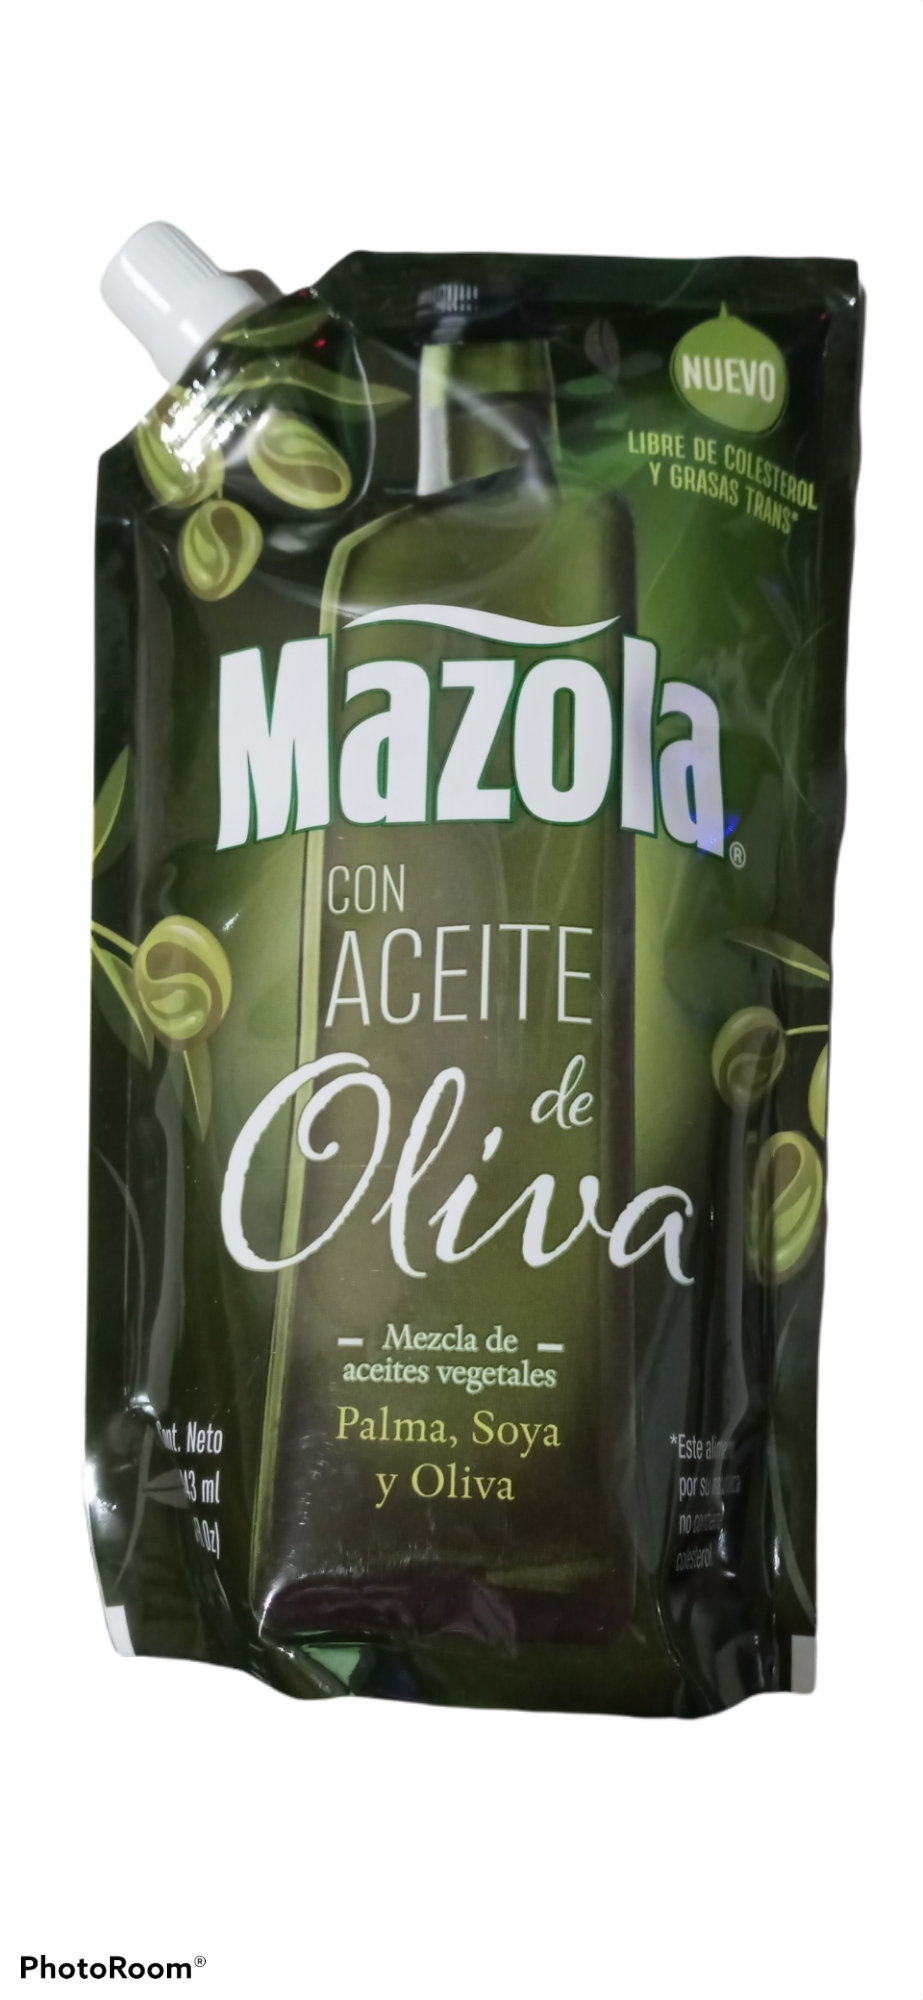 Aceite de oliva mazola 443ml